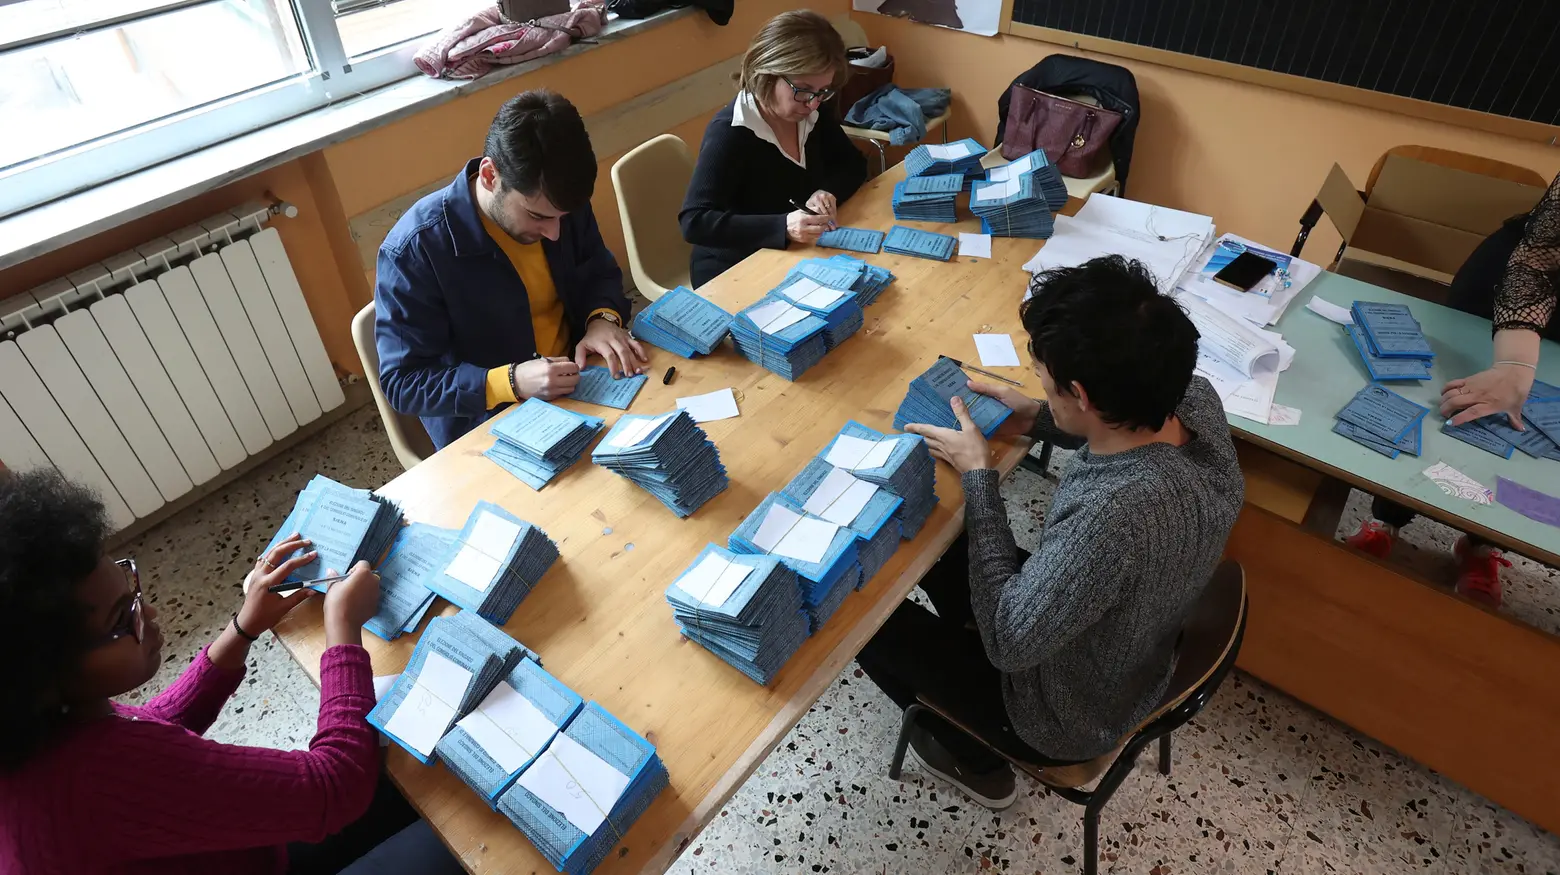 La preparazione delle schede in un seggio elettorale a Siena (Foto Dipietro)